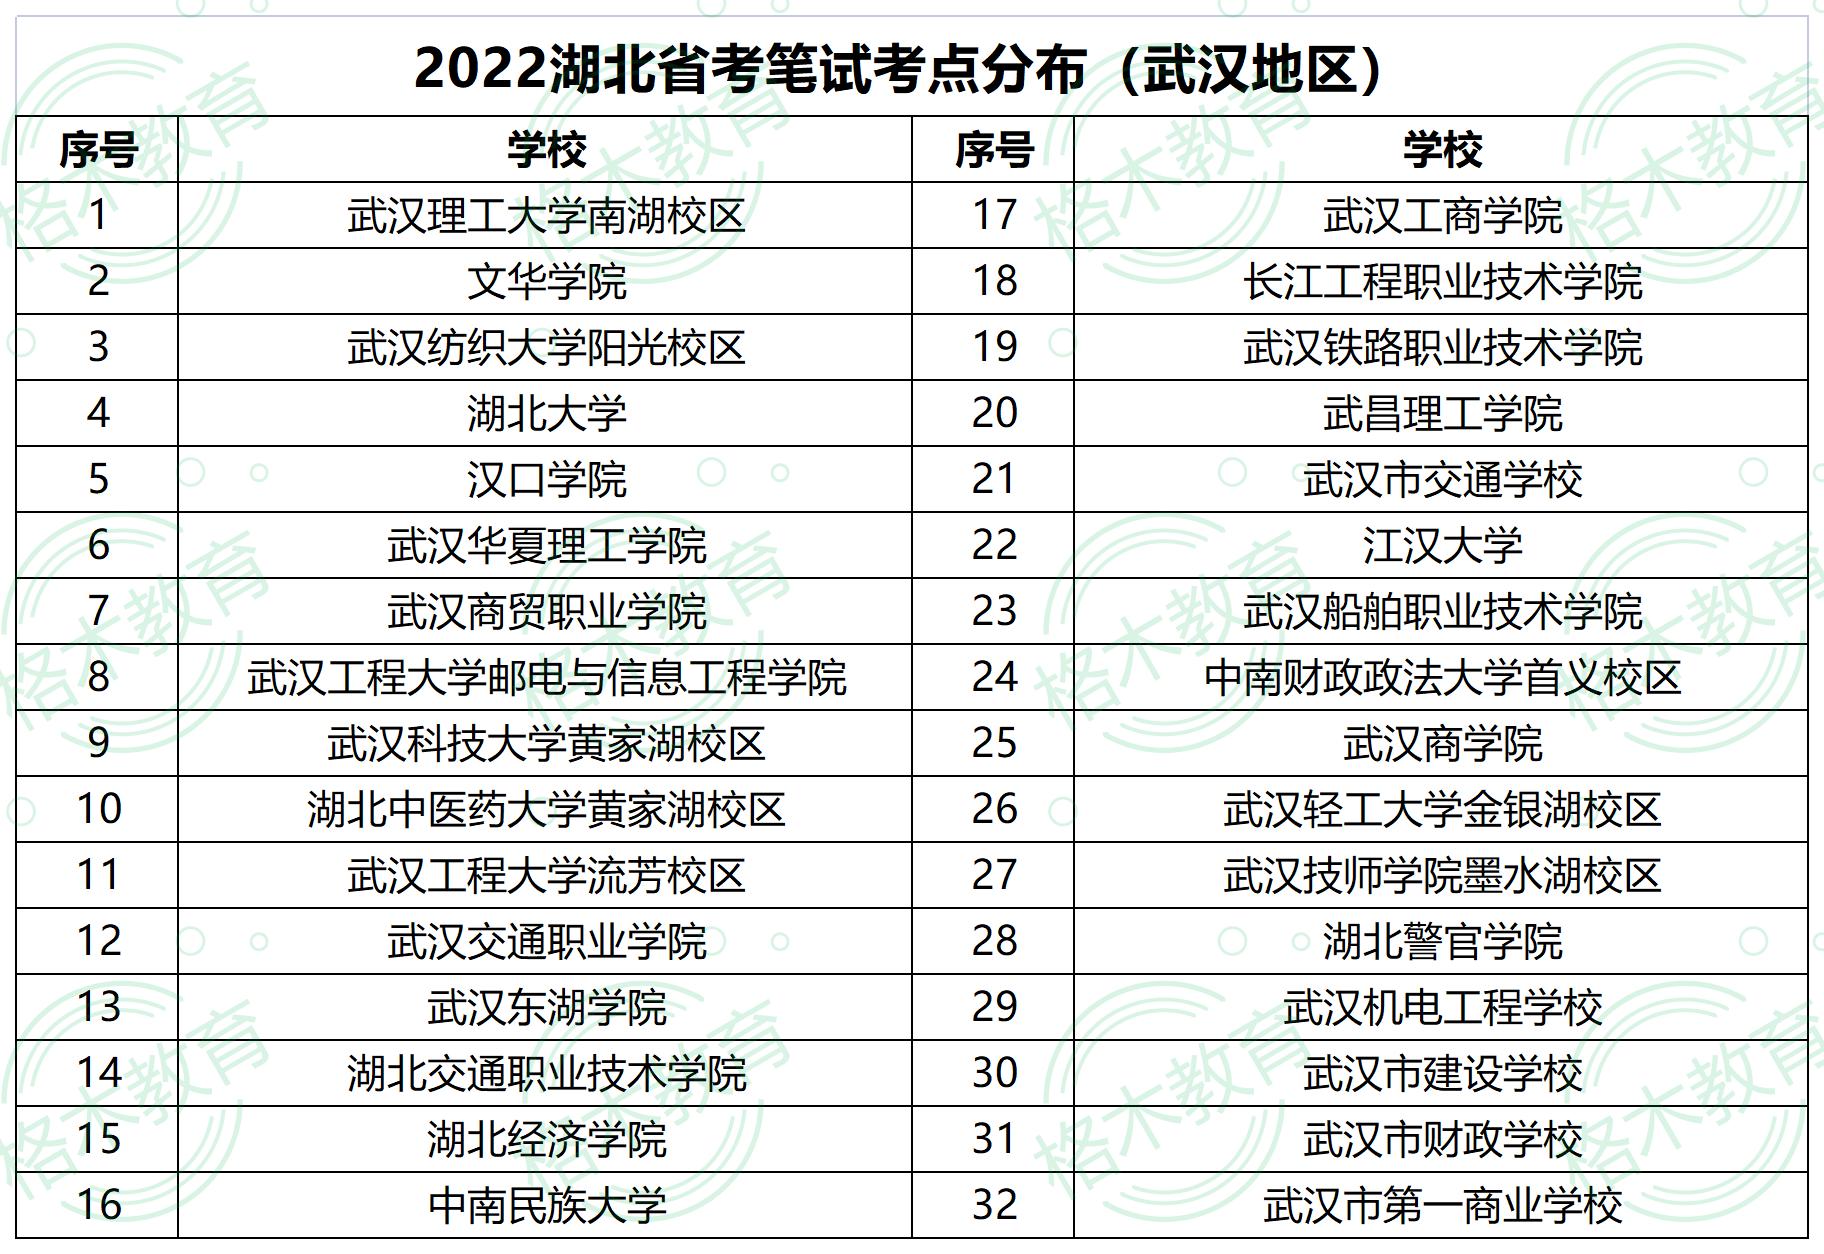 2022年湖北武汉公务员考试考场分布图—长江工程职业技术学院